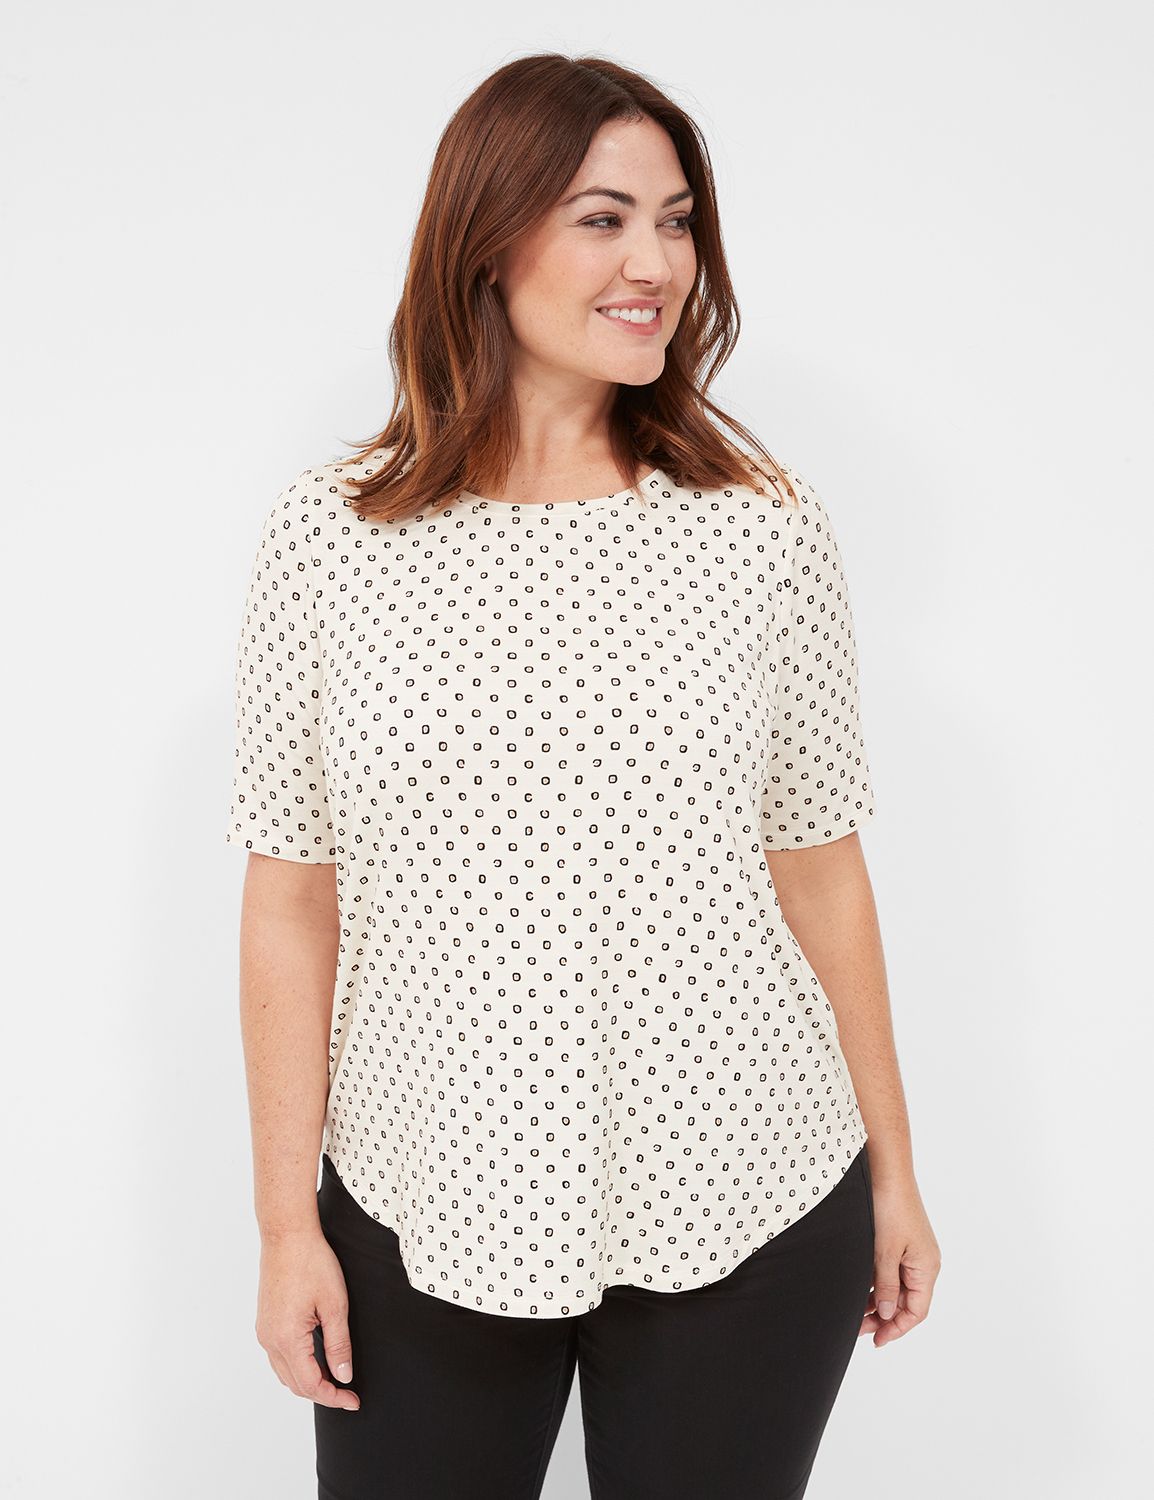 Perfect Sleeve - Plus Size Short Sleeve Tee Shirts | Lane Bryant